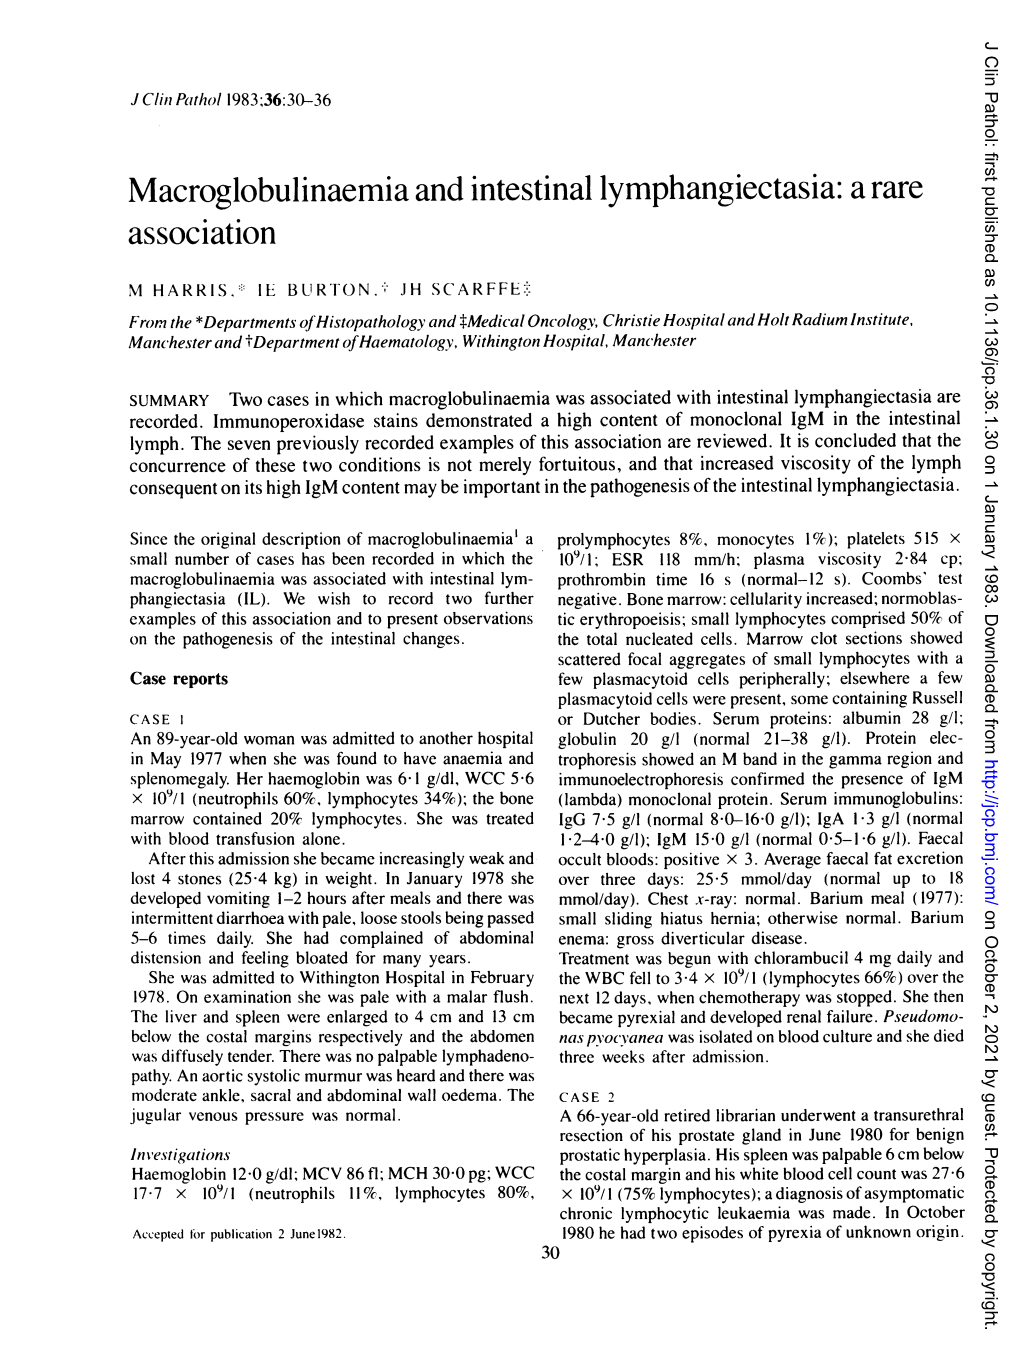 Macroglobulinaemia and Intestinal Lymphangiectasia: a Rare Association